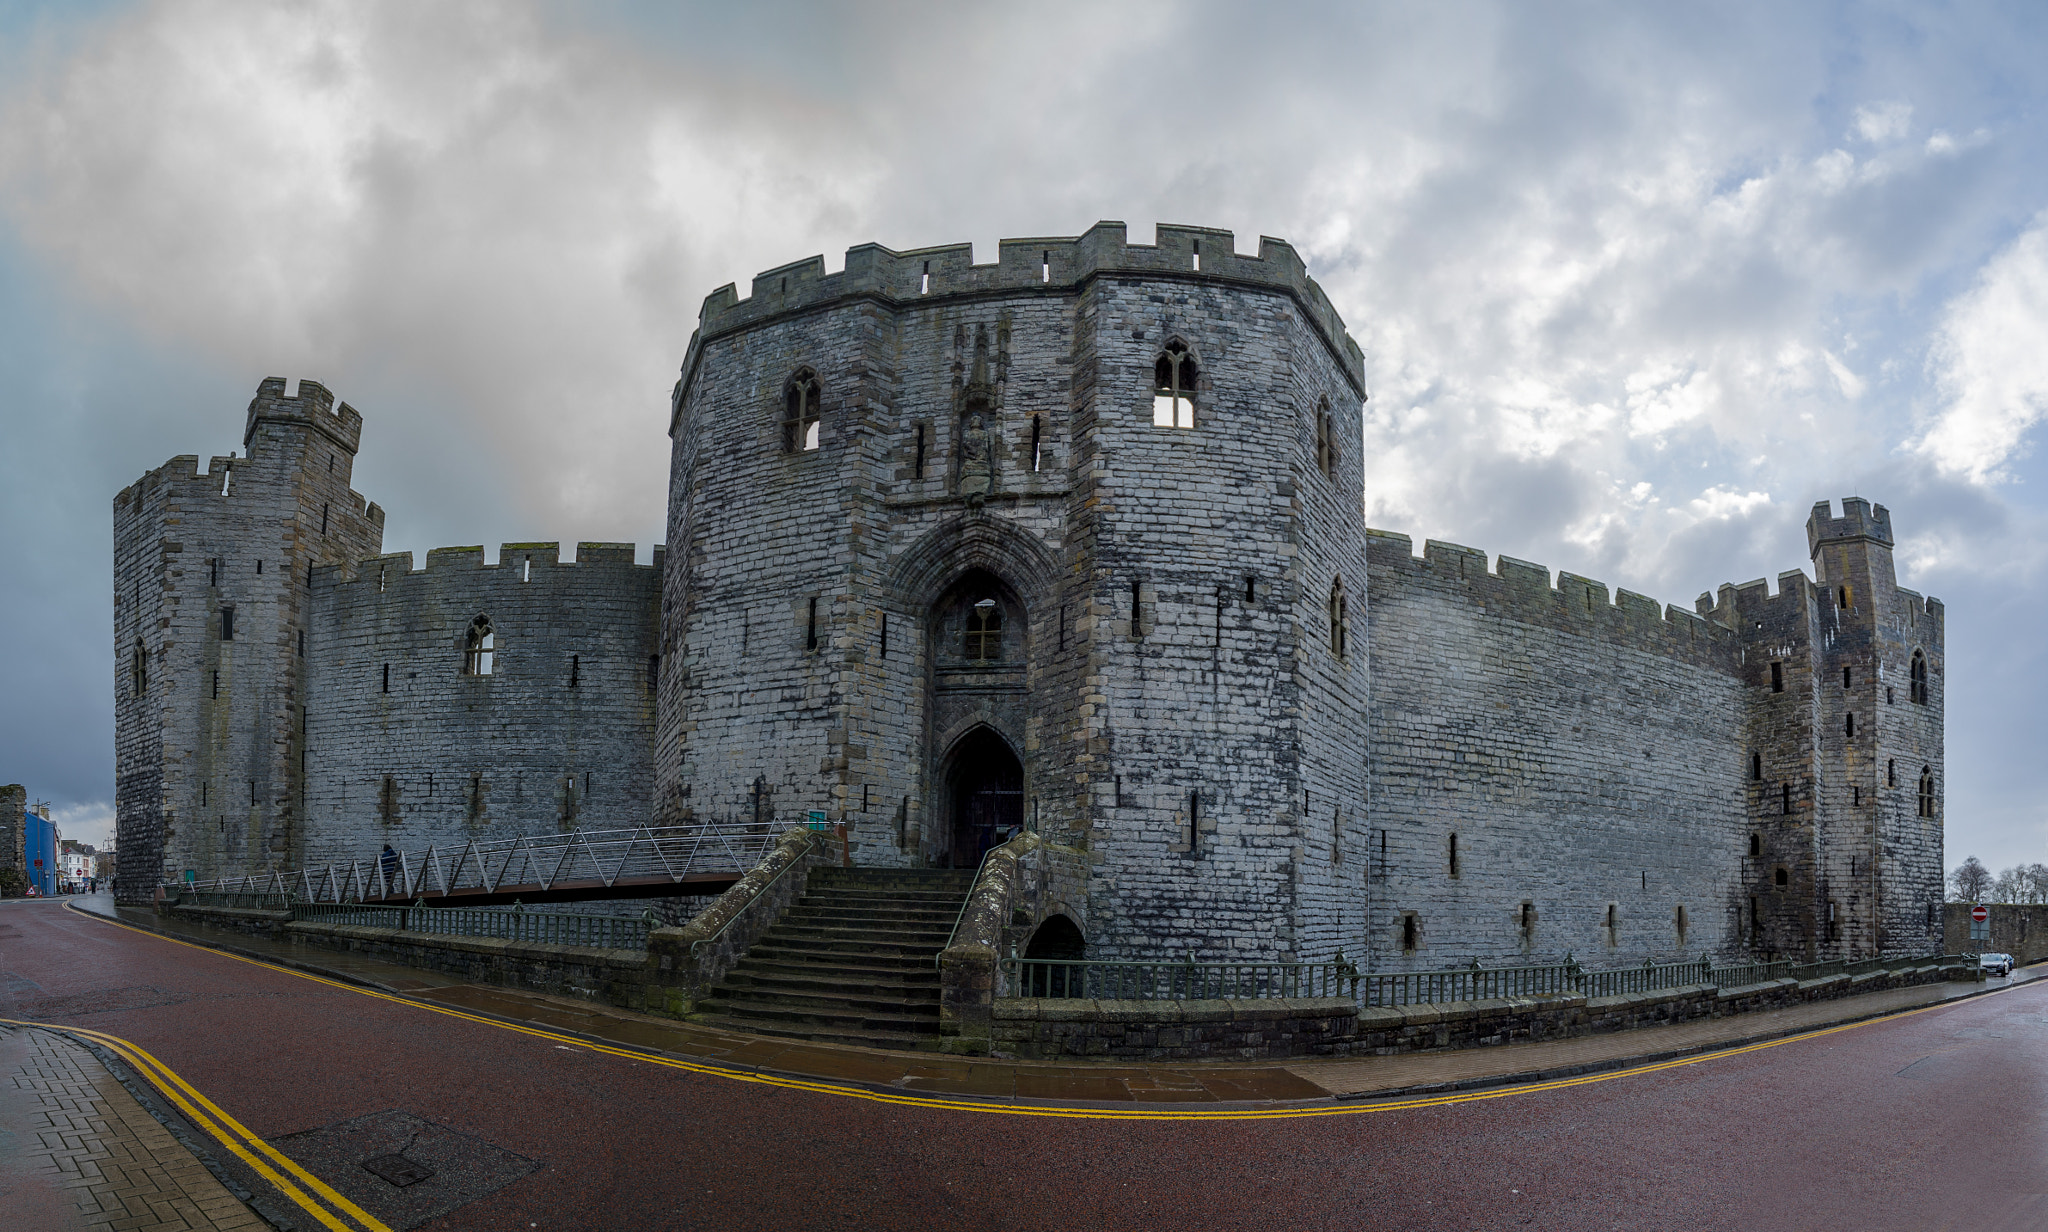 Sony a7S + Sony Vario-Tessar T* FE 16-35mm F4 ZA OSS sample photo. Caernarfon castle photography